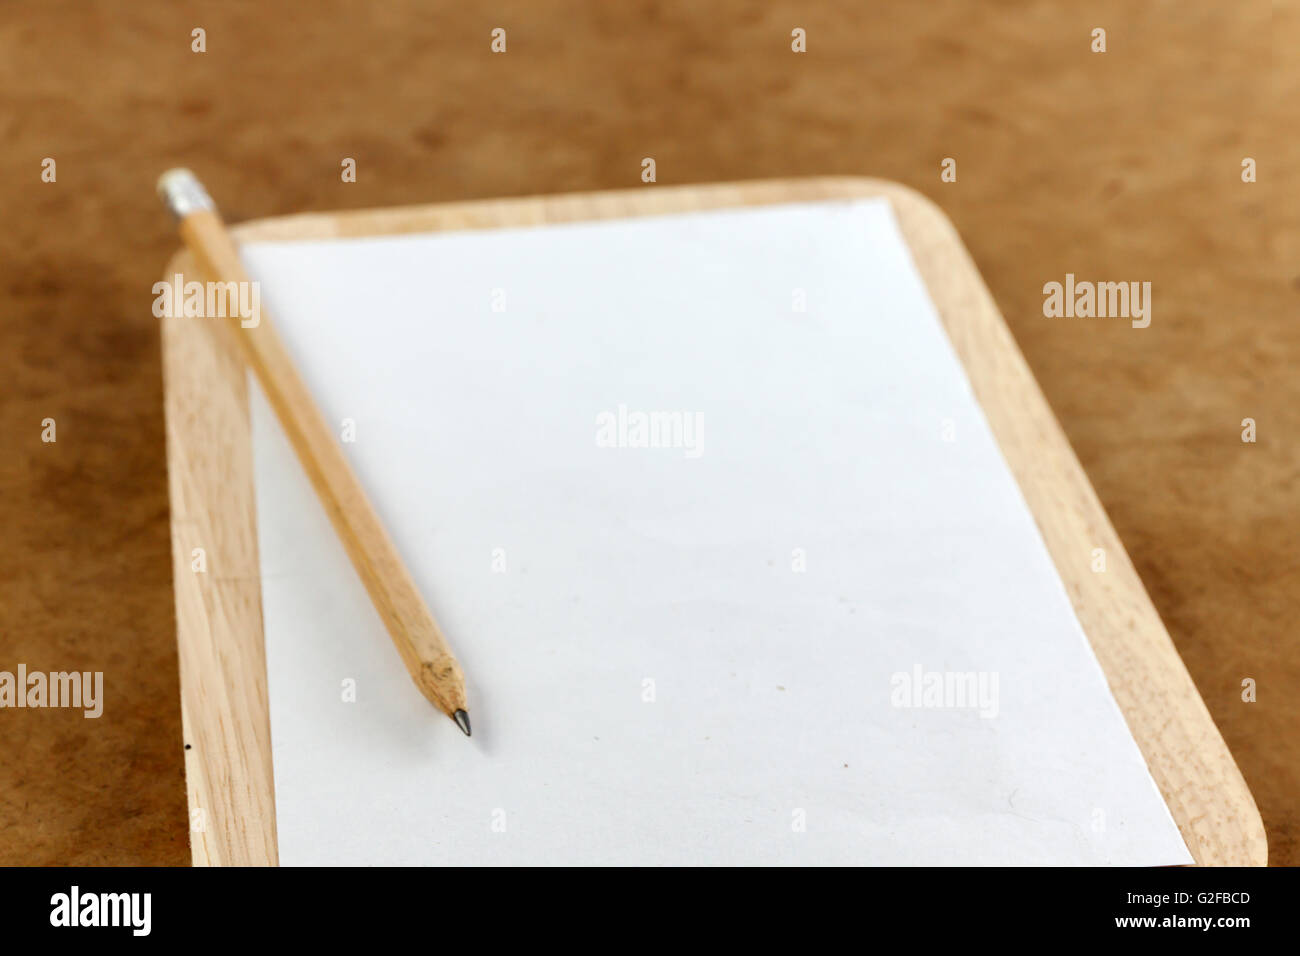 Hinweis leeres Papier und Bleistift auf den Holzrahmen. selektive front konzentrieren. Stockfoto